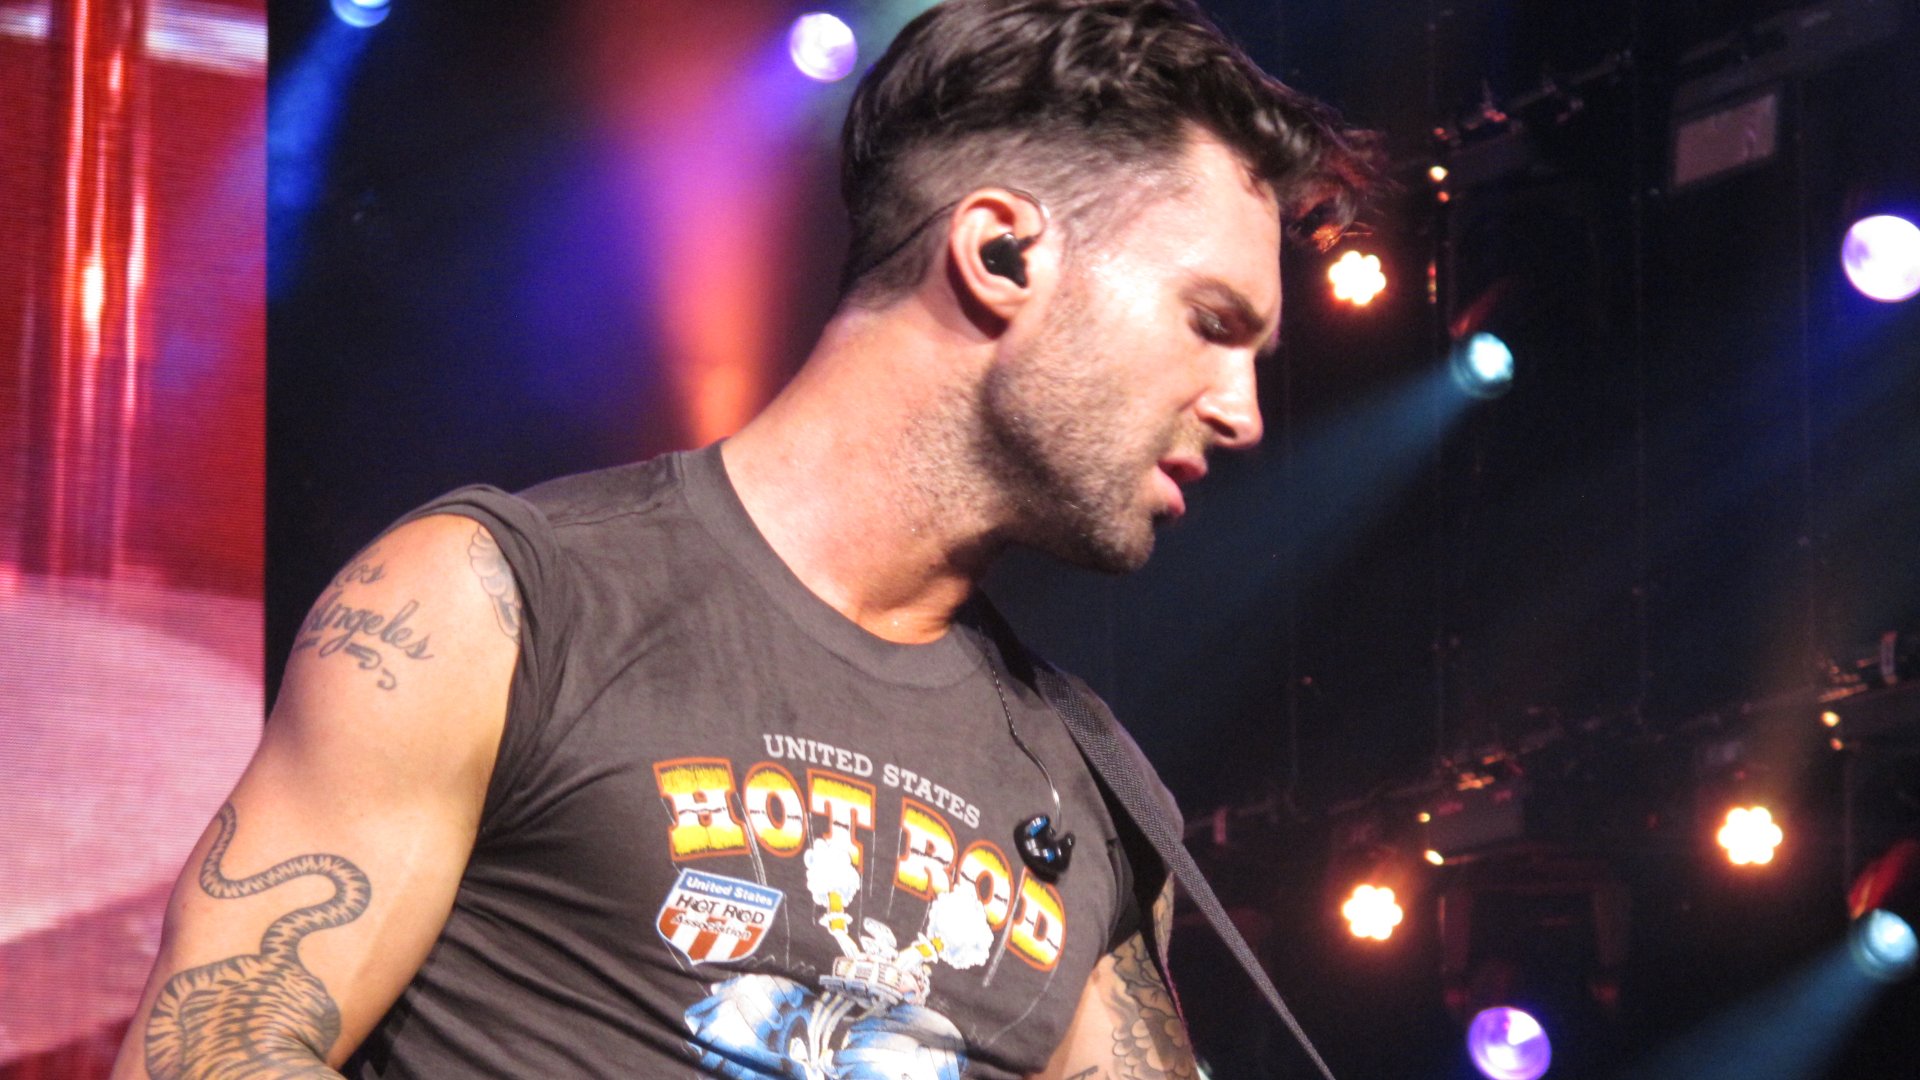 Concierto Maroon 5 en Barcelona: descubre los escándalos más sonados del vocalista Adam Levine